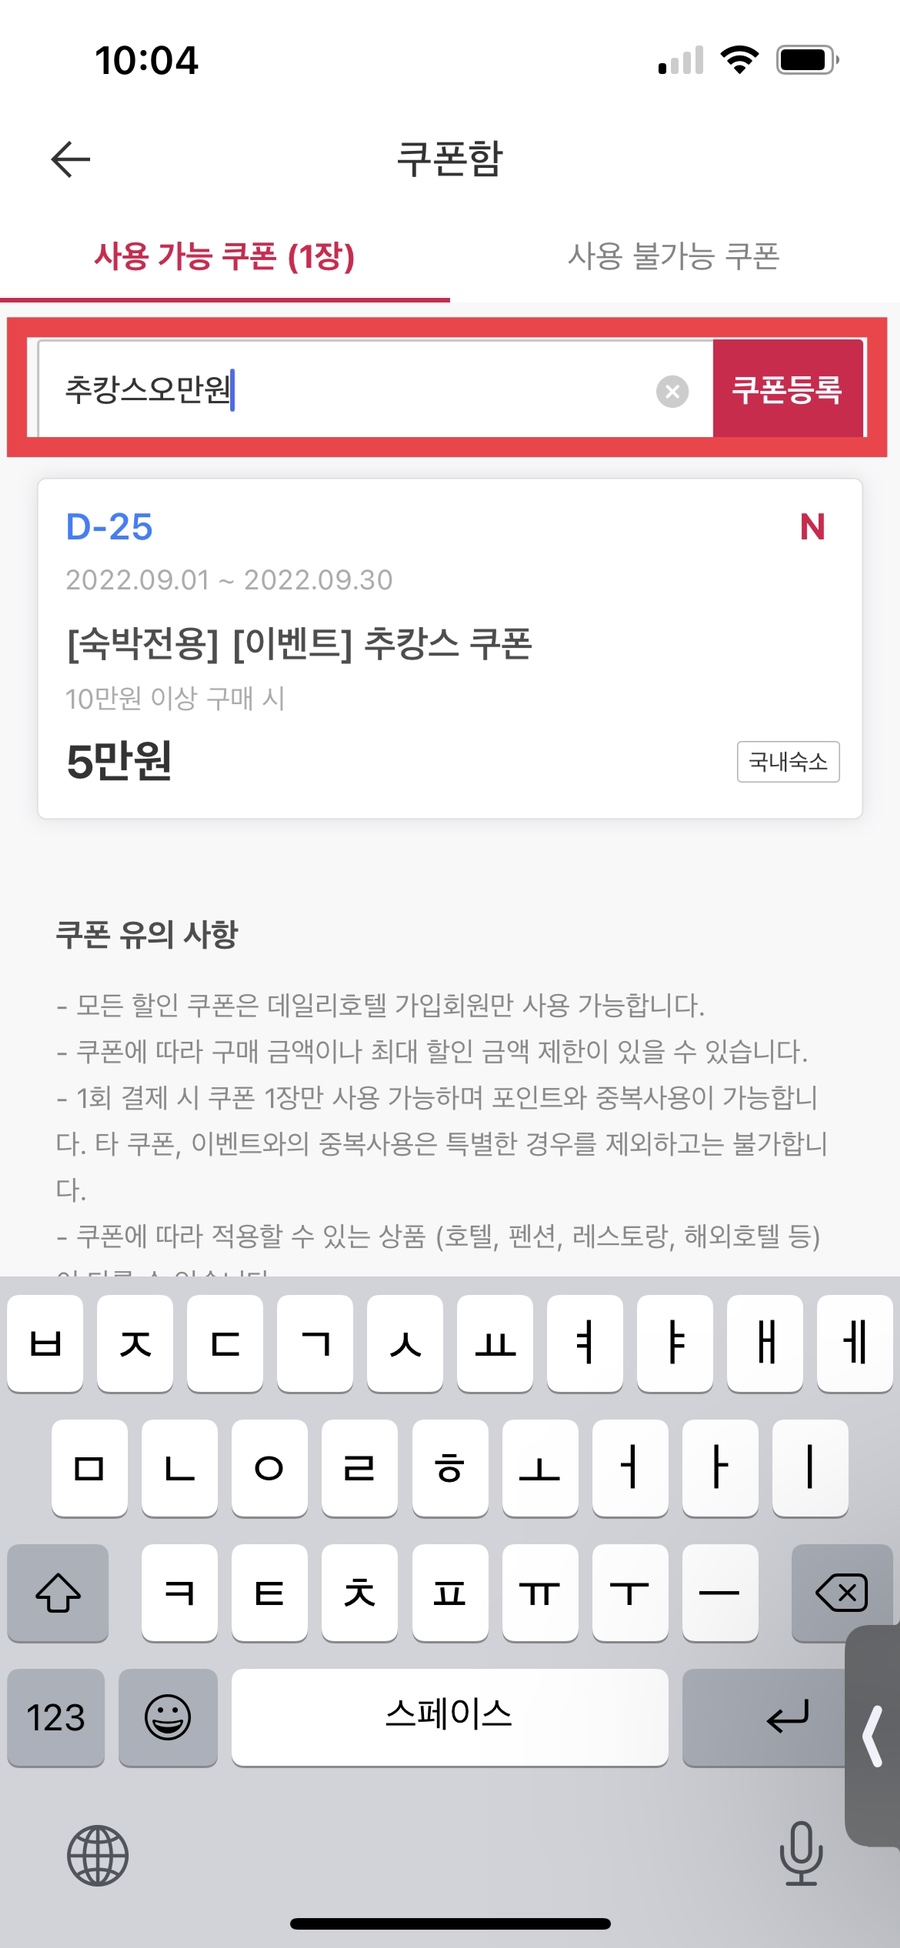 서울 가성비 호텔 글래드 강남 코엑스센터 데일리호텔 쿠폰